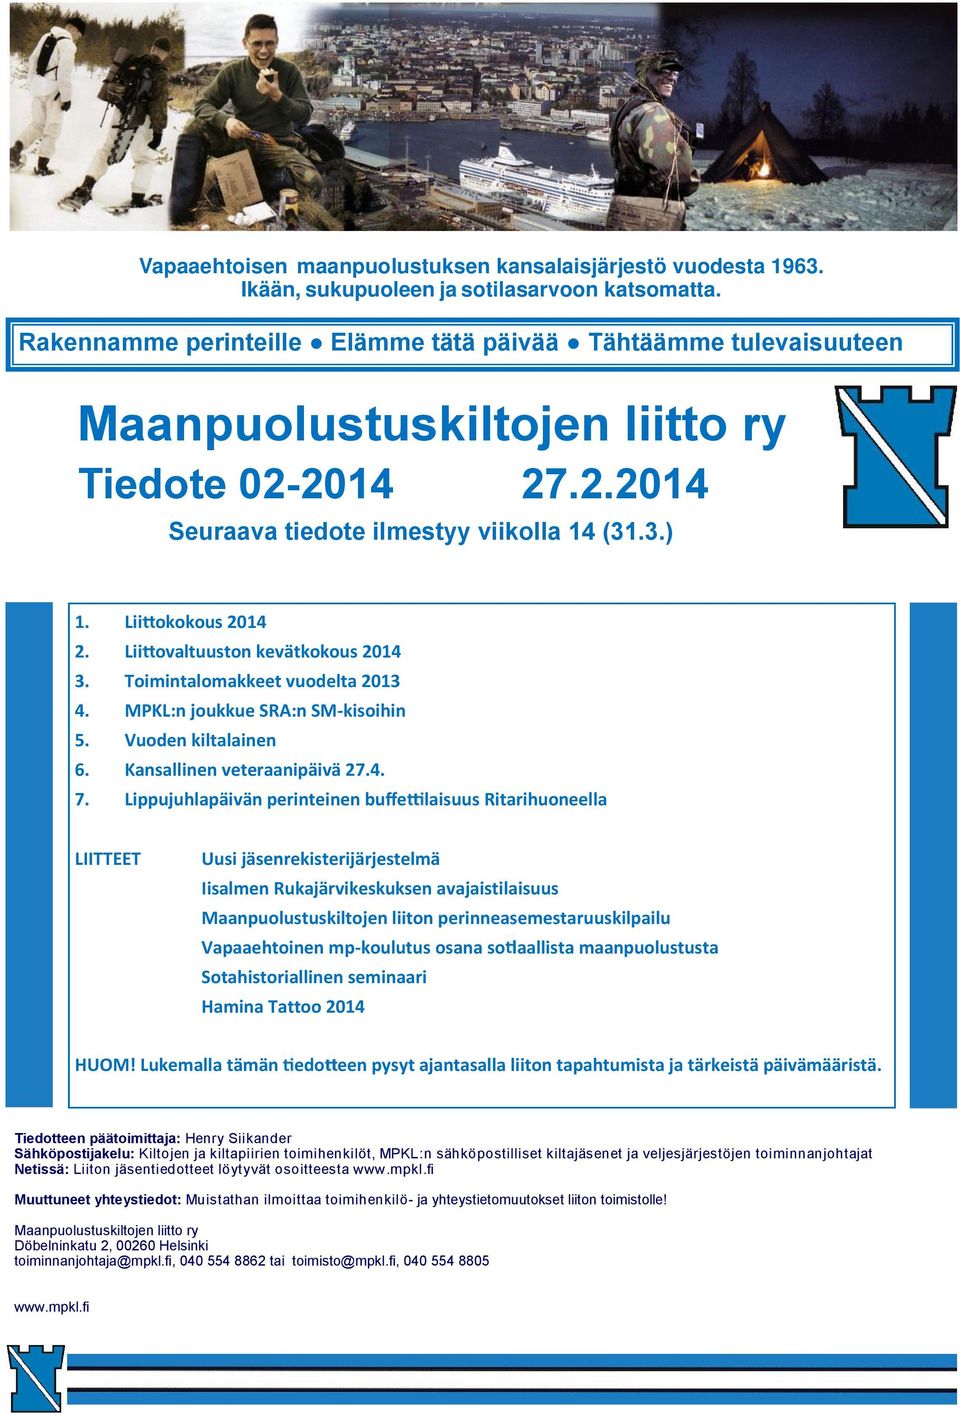 Lii ovaltuuston kevätkokous 2014 3. Toimintalomakkeet vuodelta 2013 4. MPKL:n joukkue SRA:n SM-kisoihin 5. Vuoden kiltalainen 6. Kansallinen veteraanipäivä 27.4. 7.